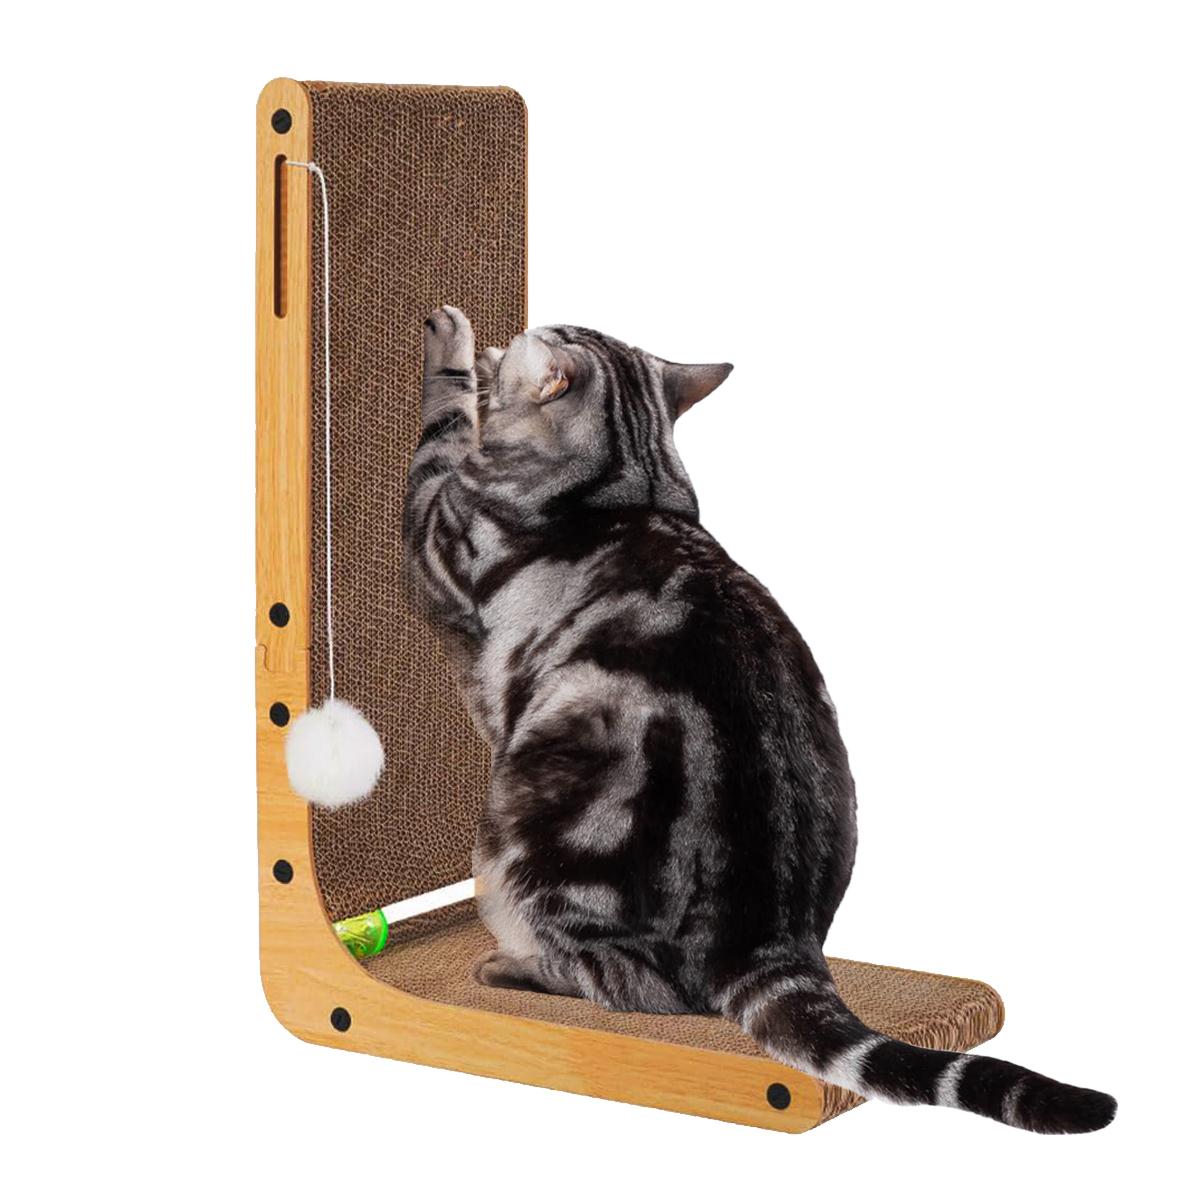 貓抓板、室內貓貓抓板、帶球玩具的紙板貓抓板、大型 L 形貓抓板紙板、保護家具貓抓板